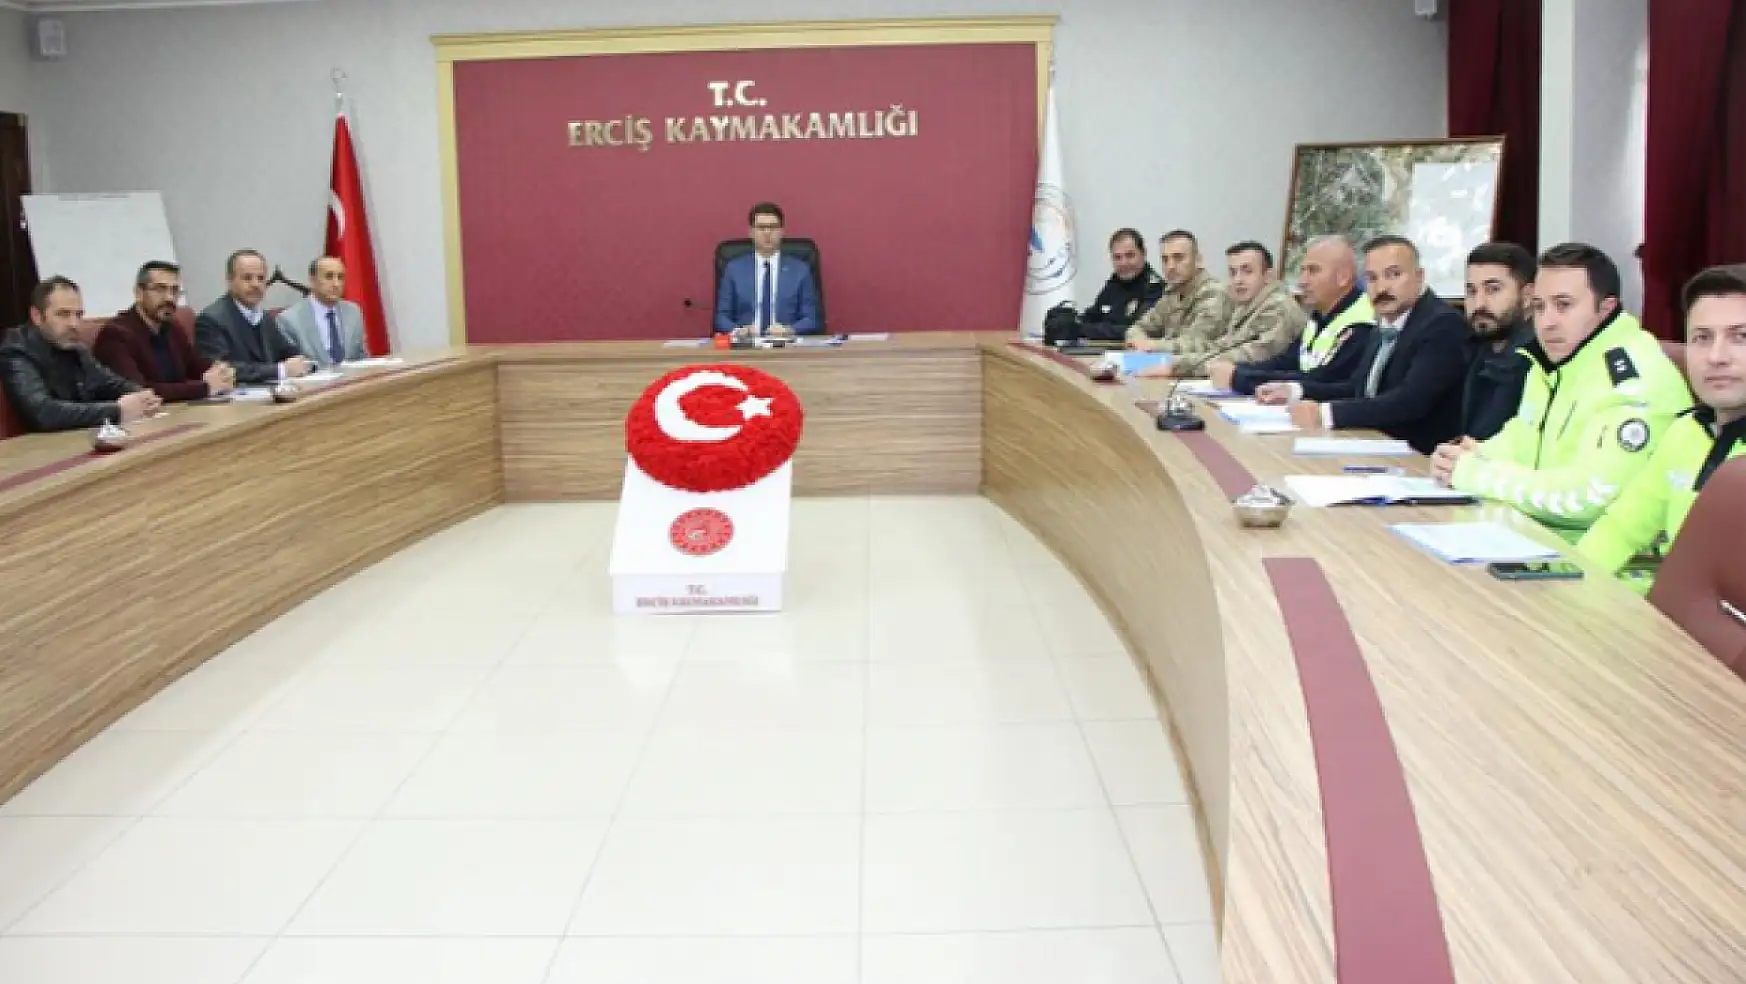 Erciş'te kış tedbirleri toplantısı